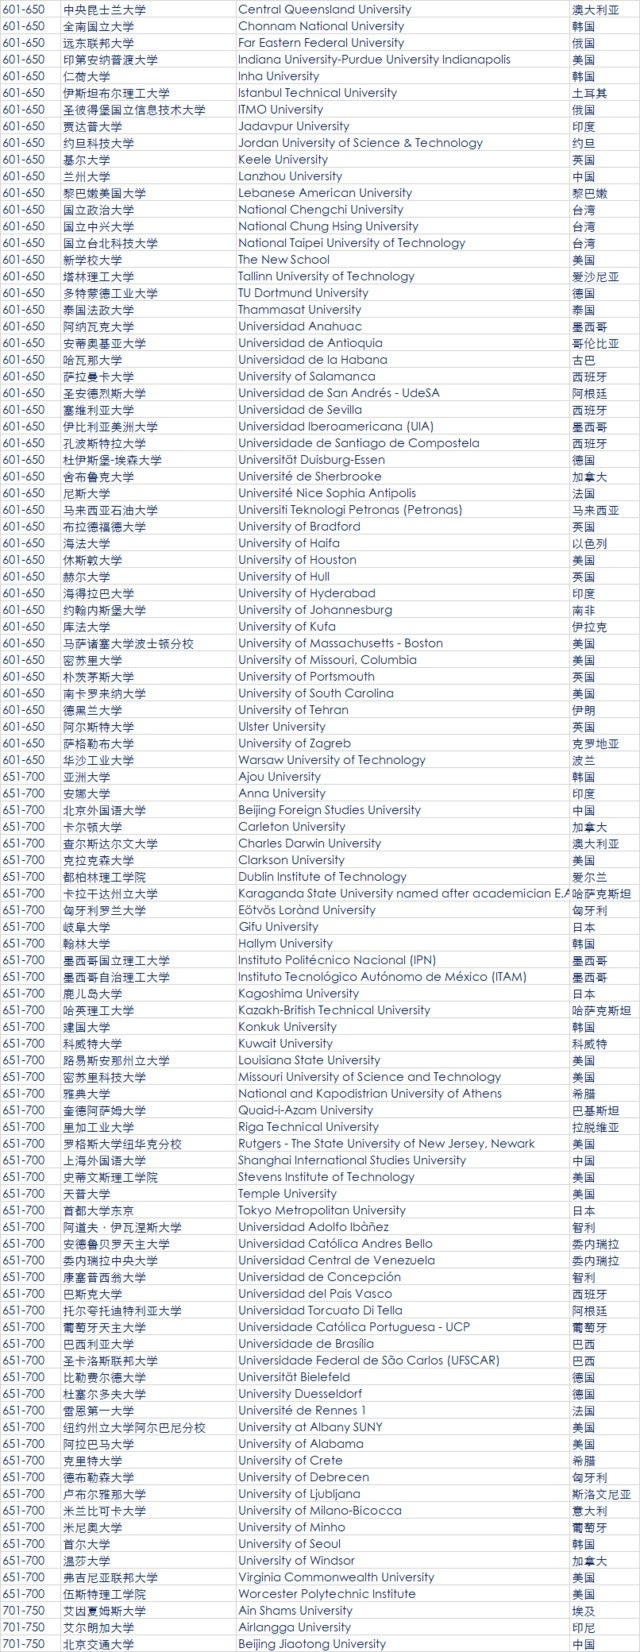 最新QS全球大学排名公布 中国大陆39所大学上榜7